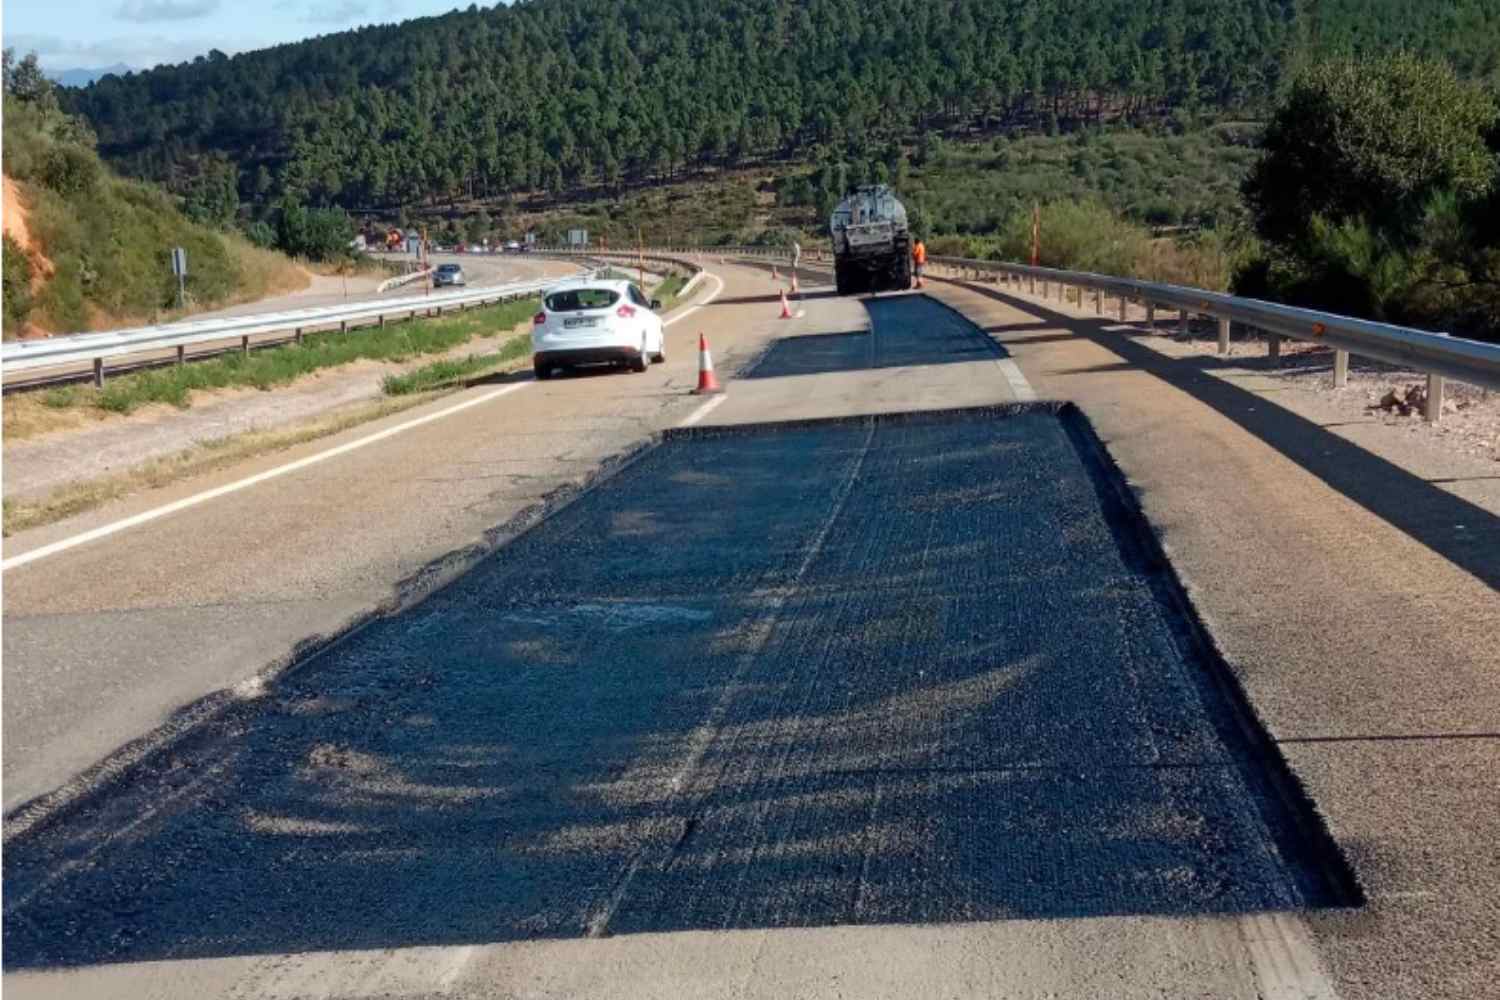 Transportes adjudica 44 millones de euros a dos contratos para la conservación de 600 km de carreteras en la provincia de León